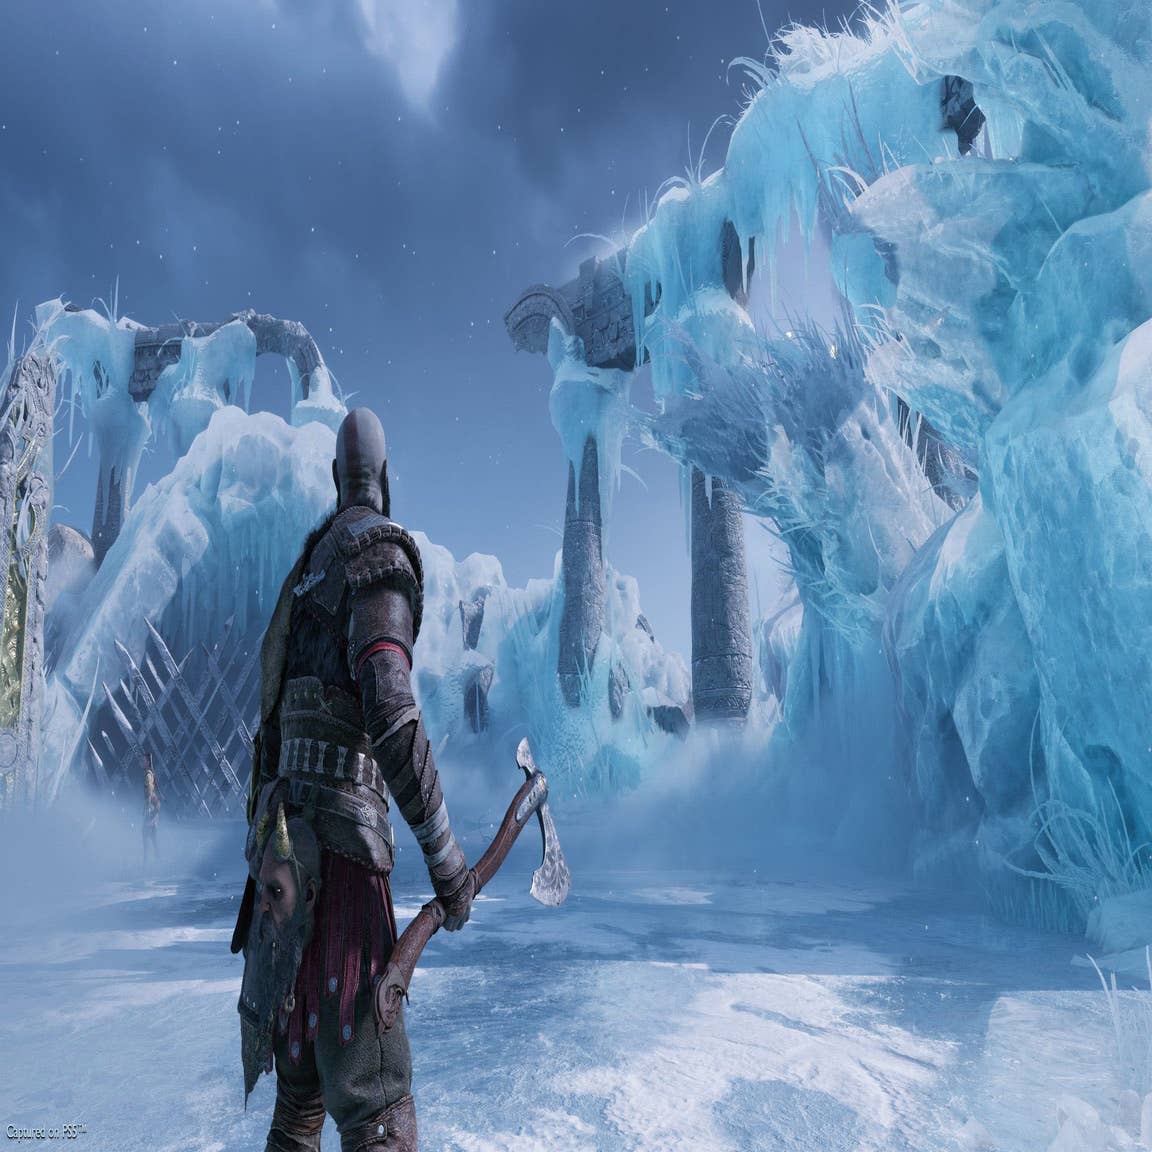 God of War Ragnarok recebe atualização de lançamento com mais de